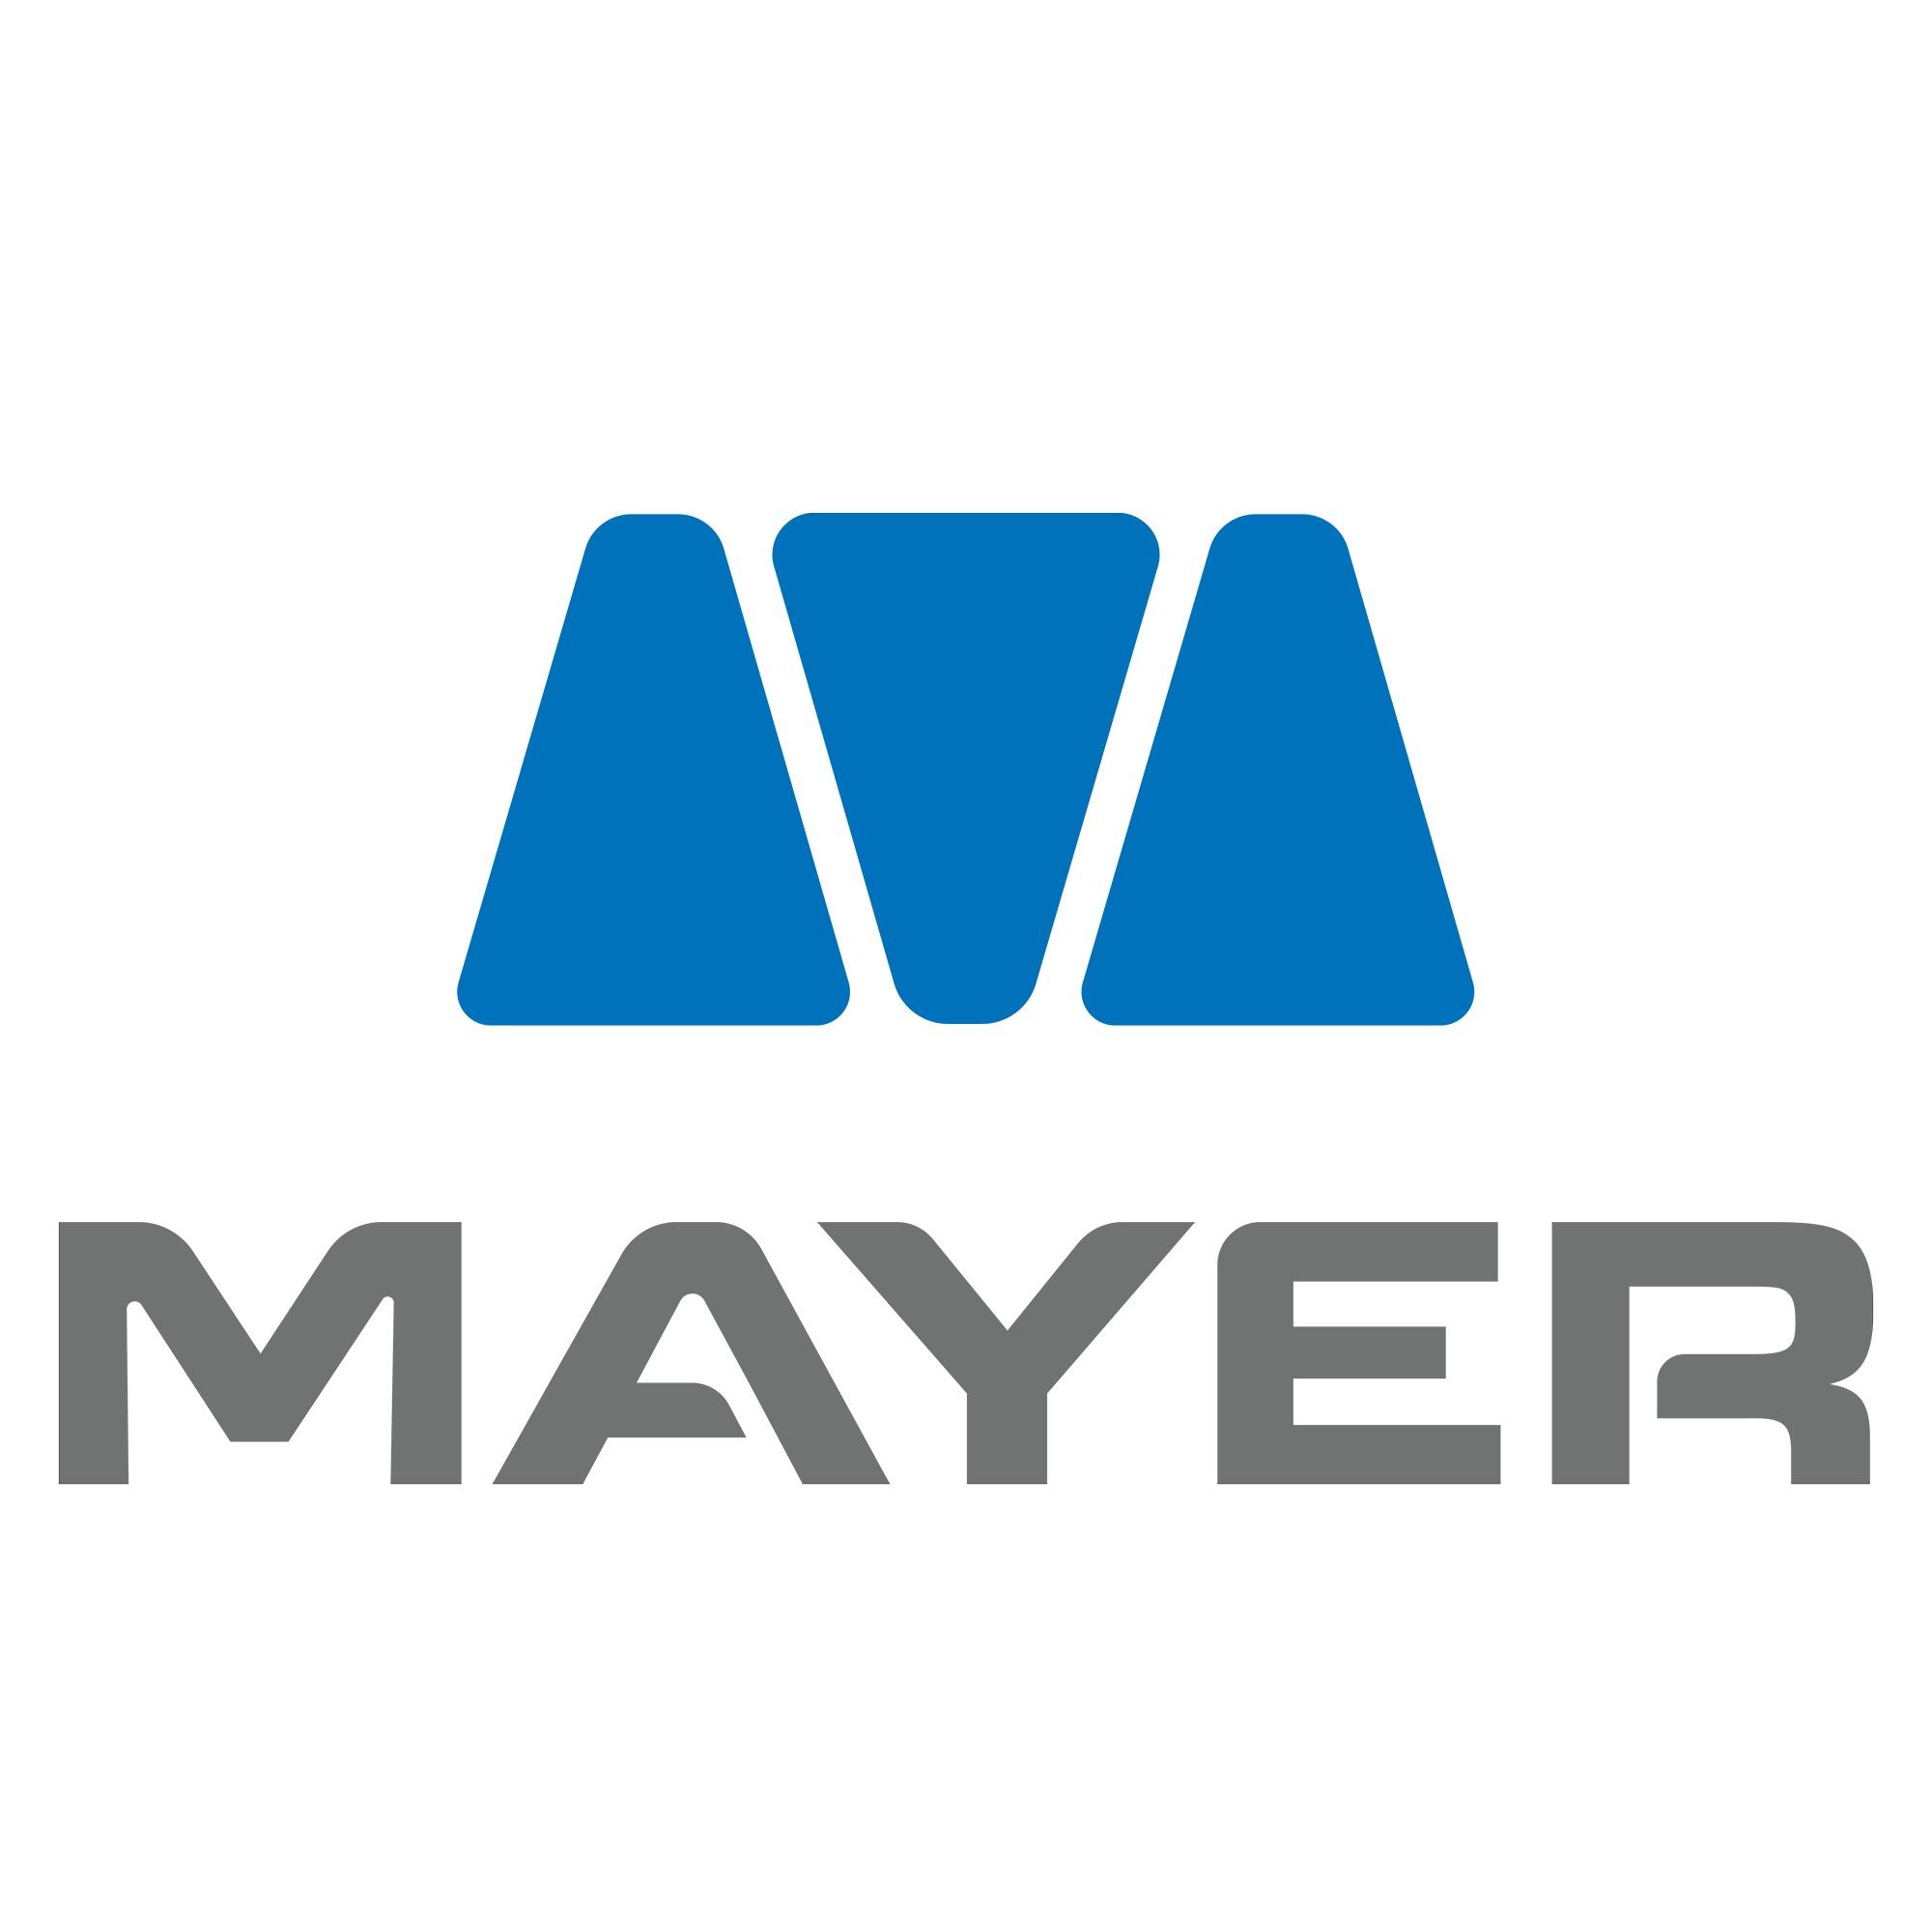 Mayer Electric Supply - Covington, GA 30014 - (770)929-0160 | ShowMeLocal.com